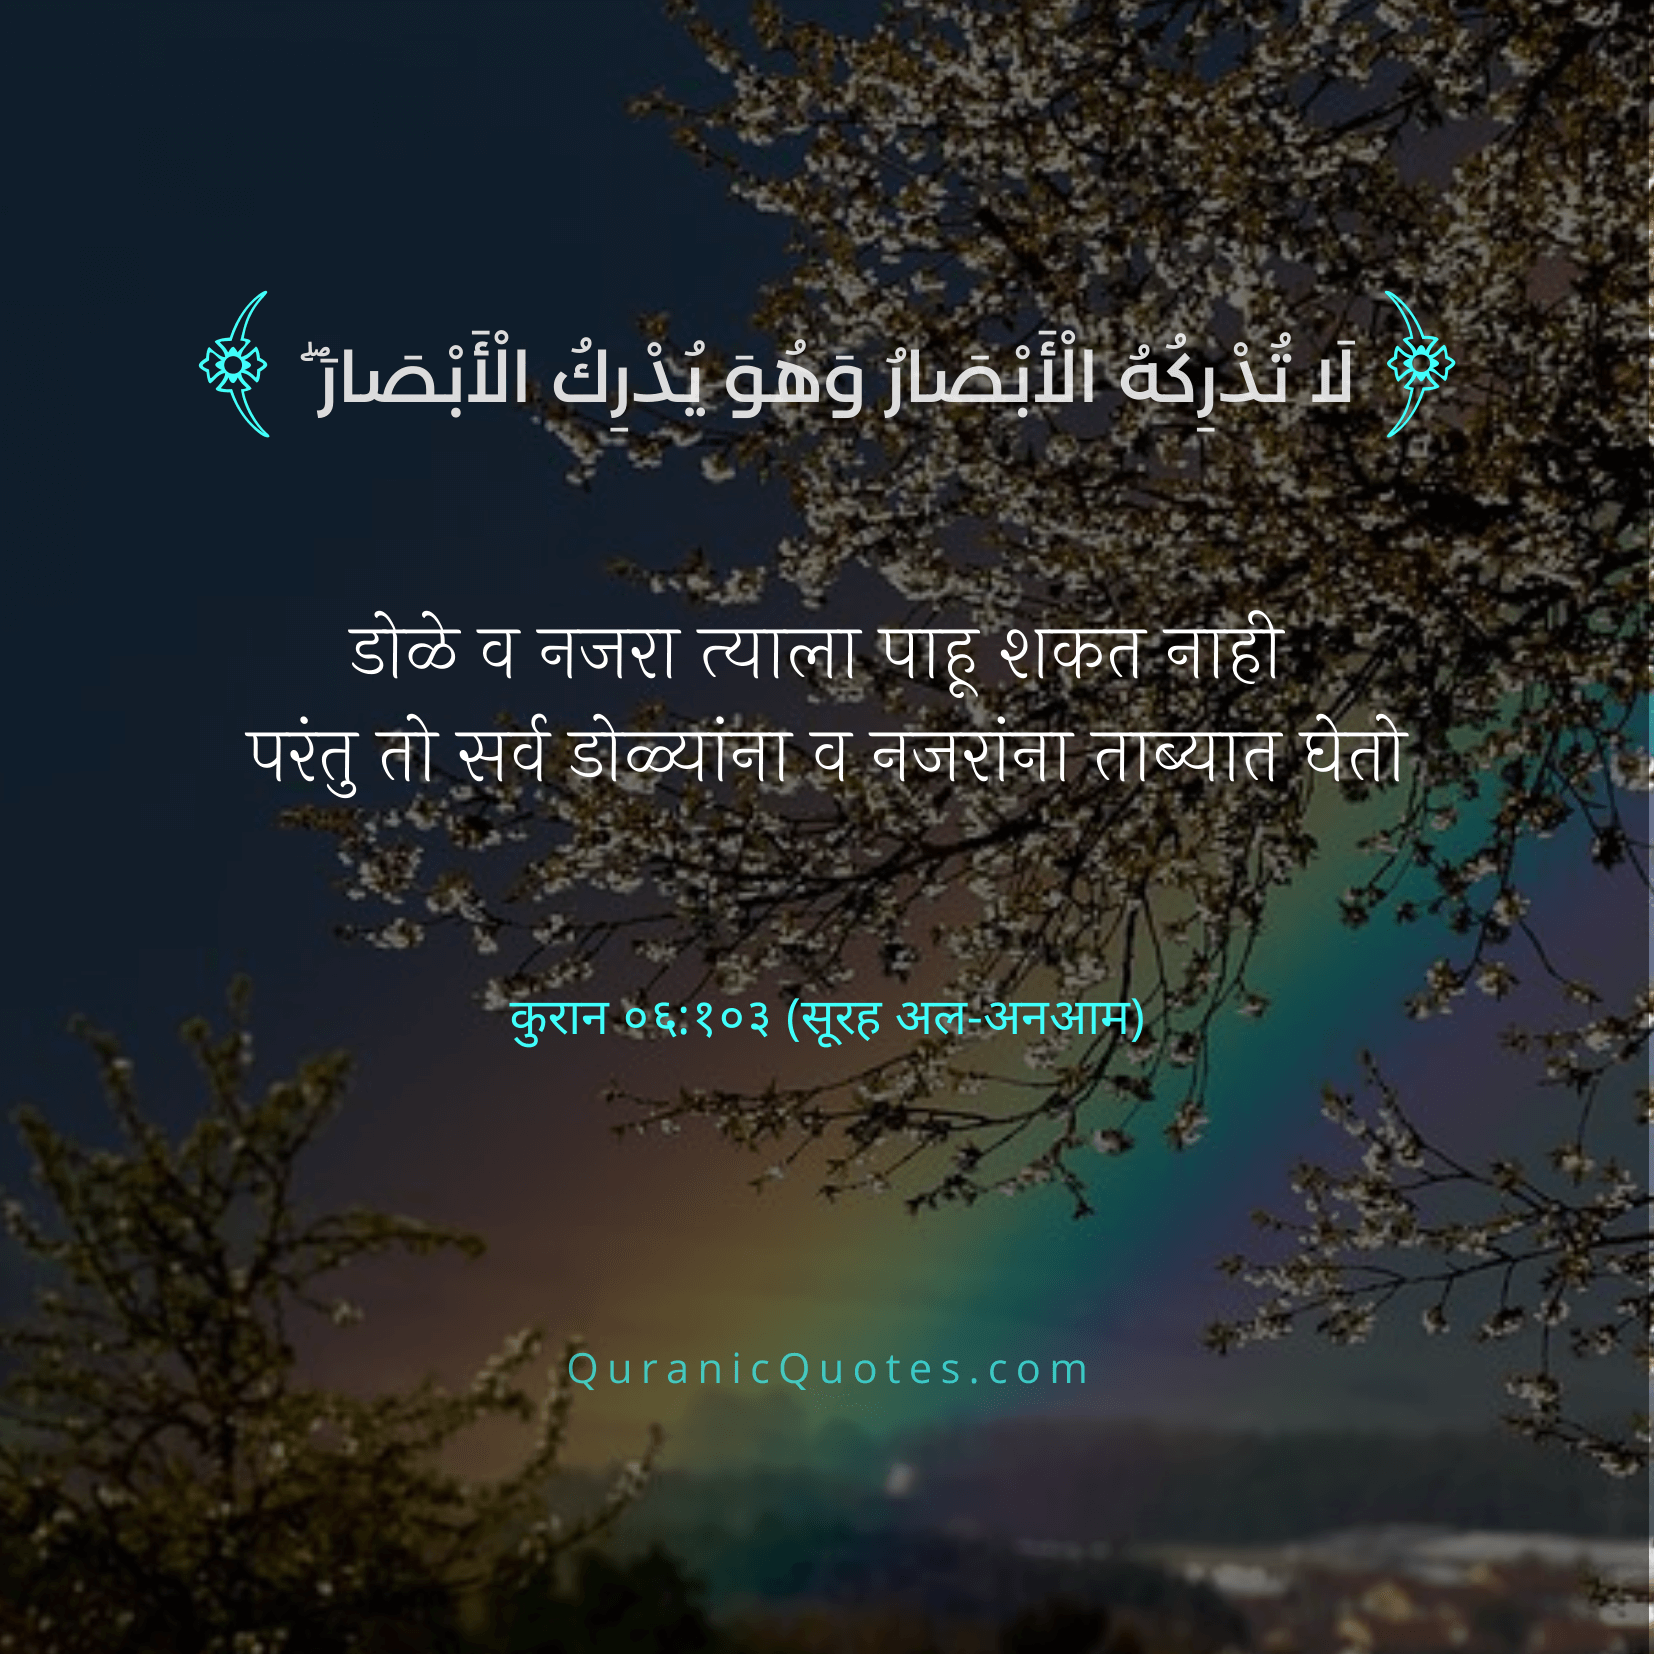 Quranic Quotes Marathi #05